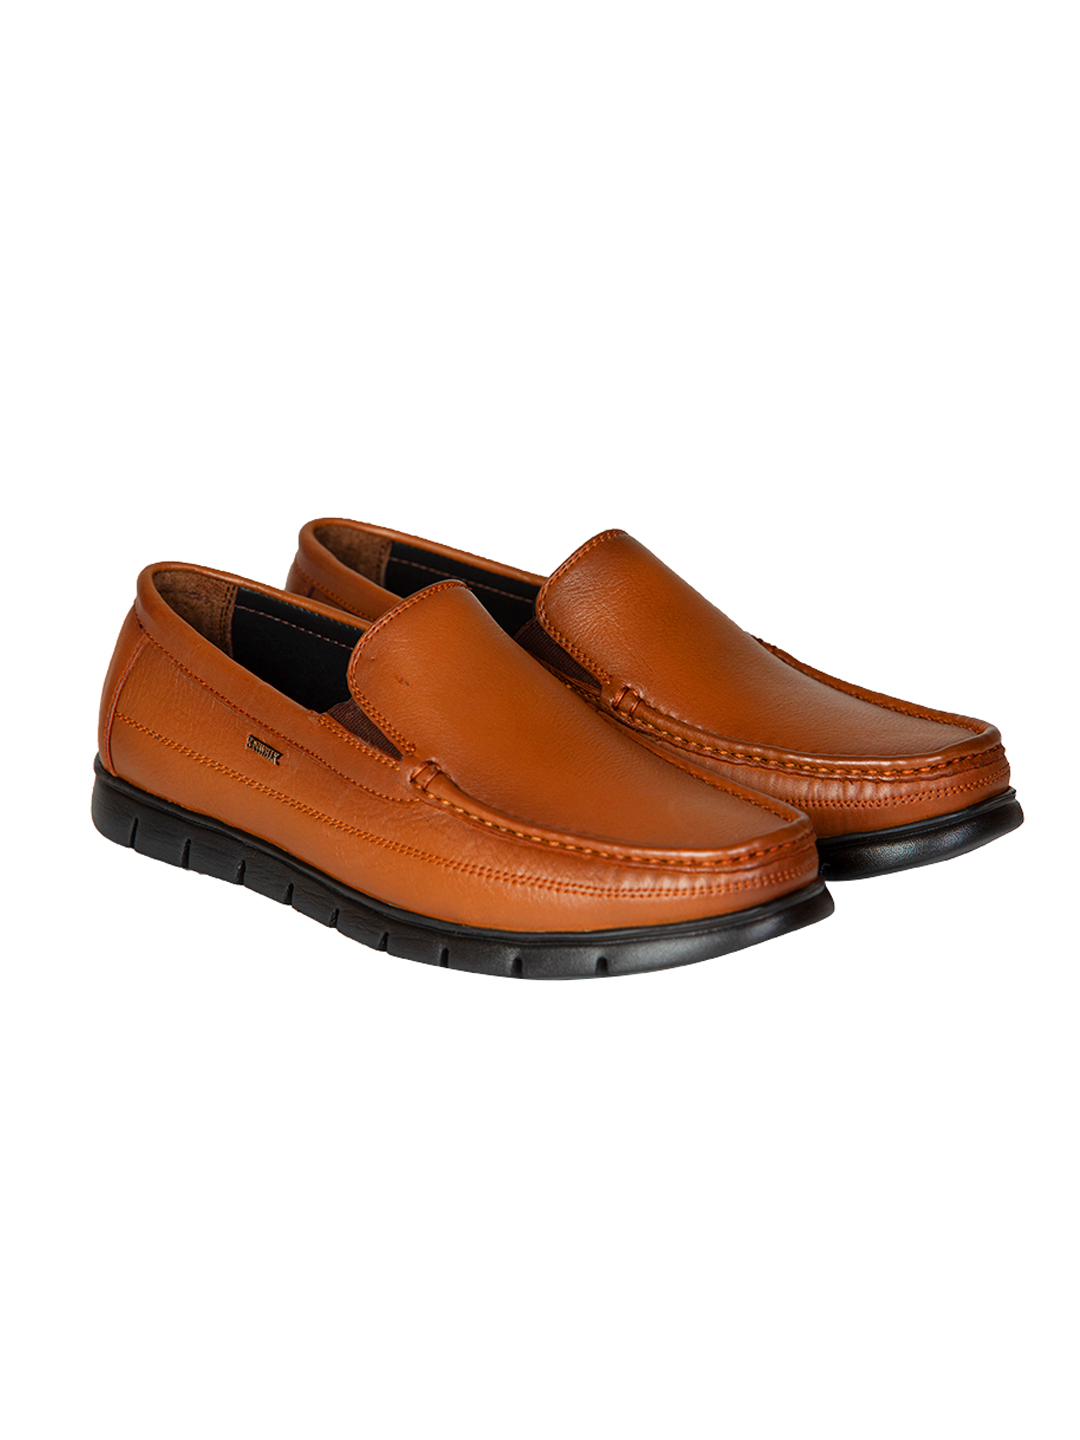 Buy Von Wellx Germany Comfort Tan Zion Shoes Online in Vadodara